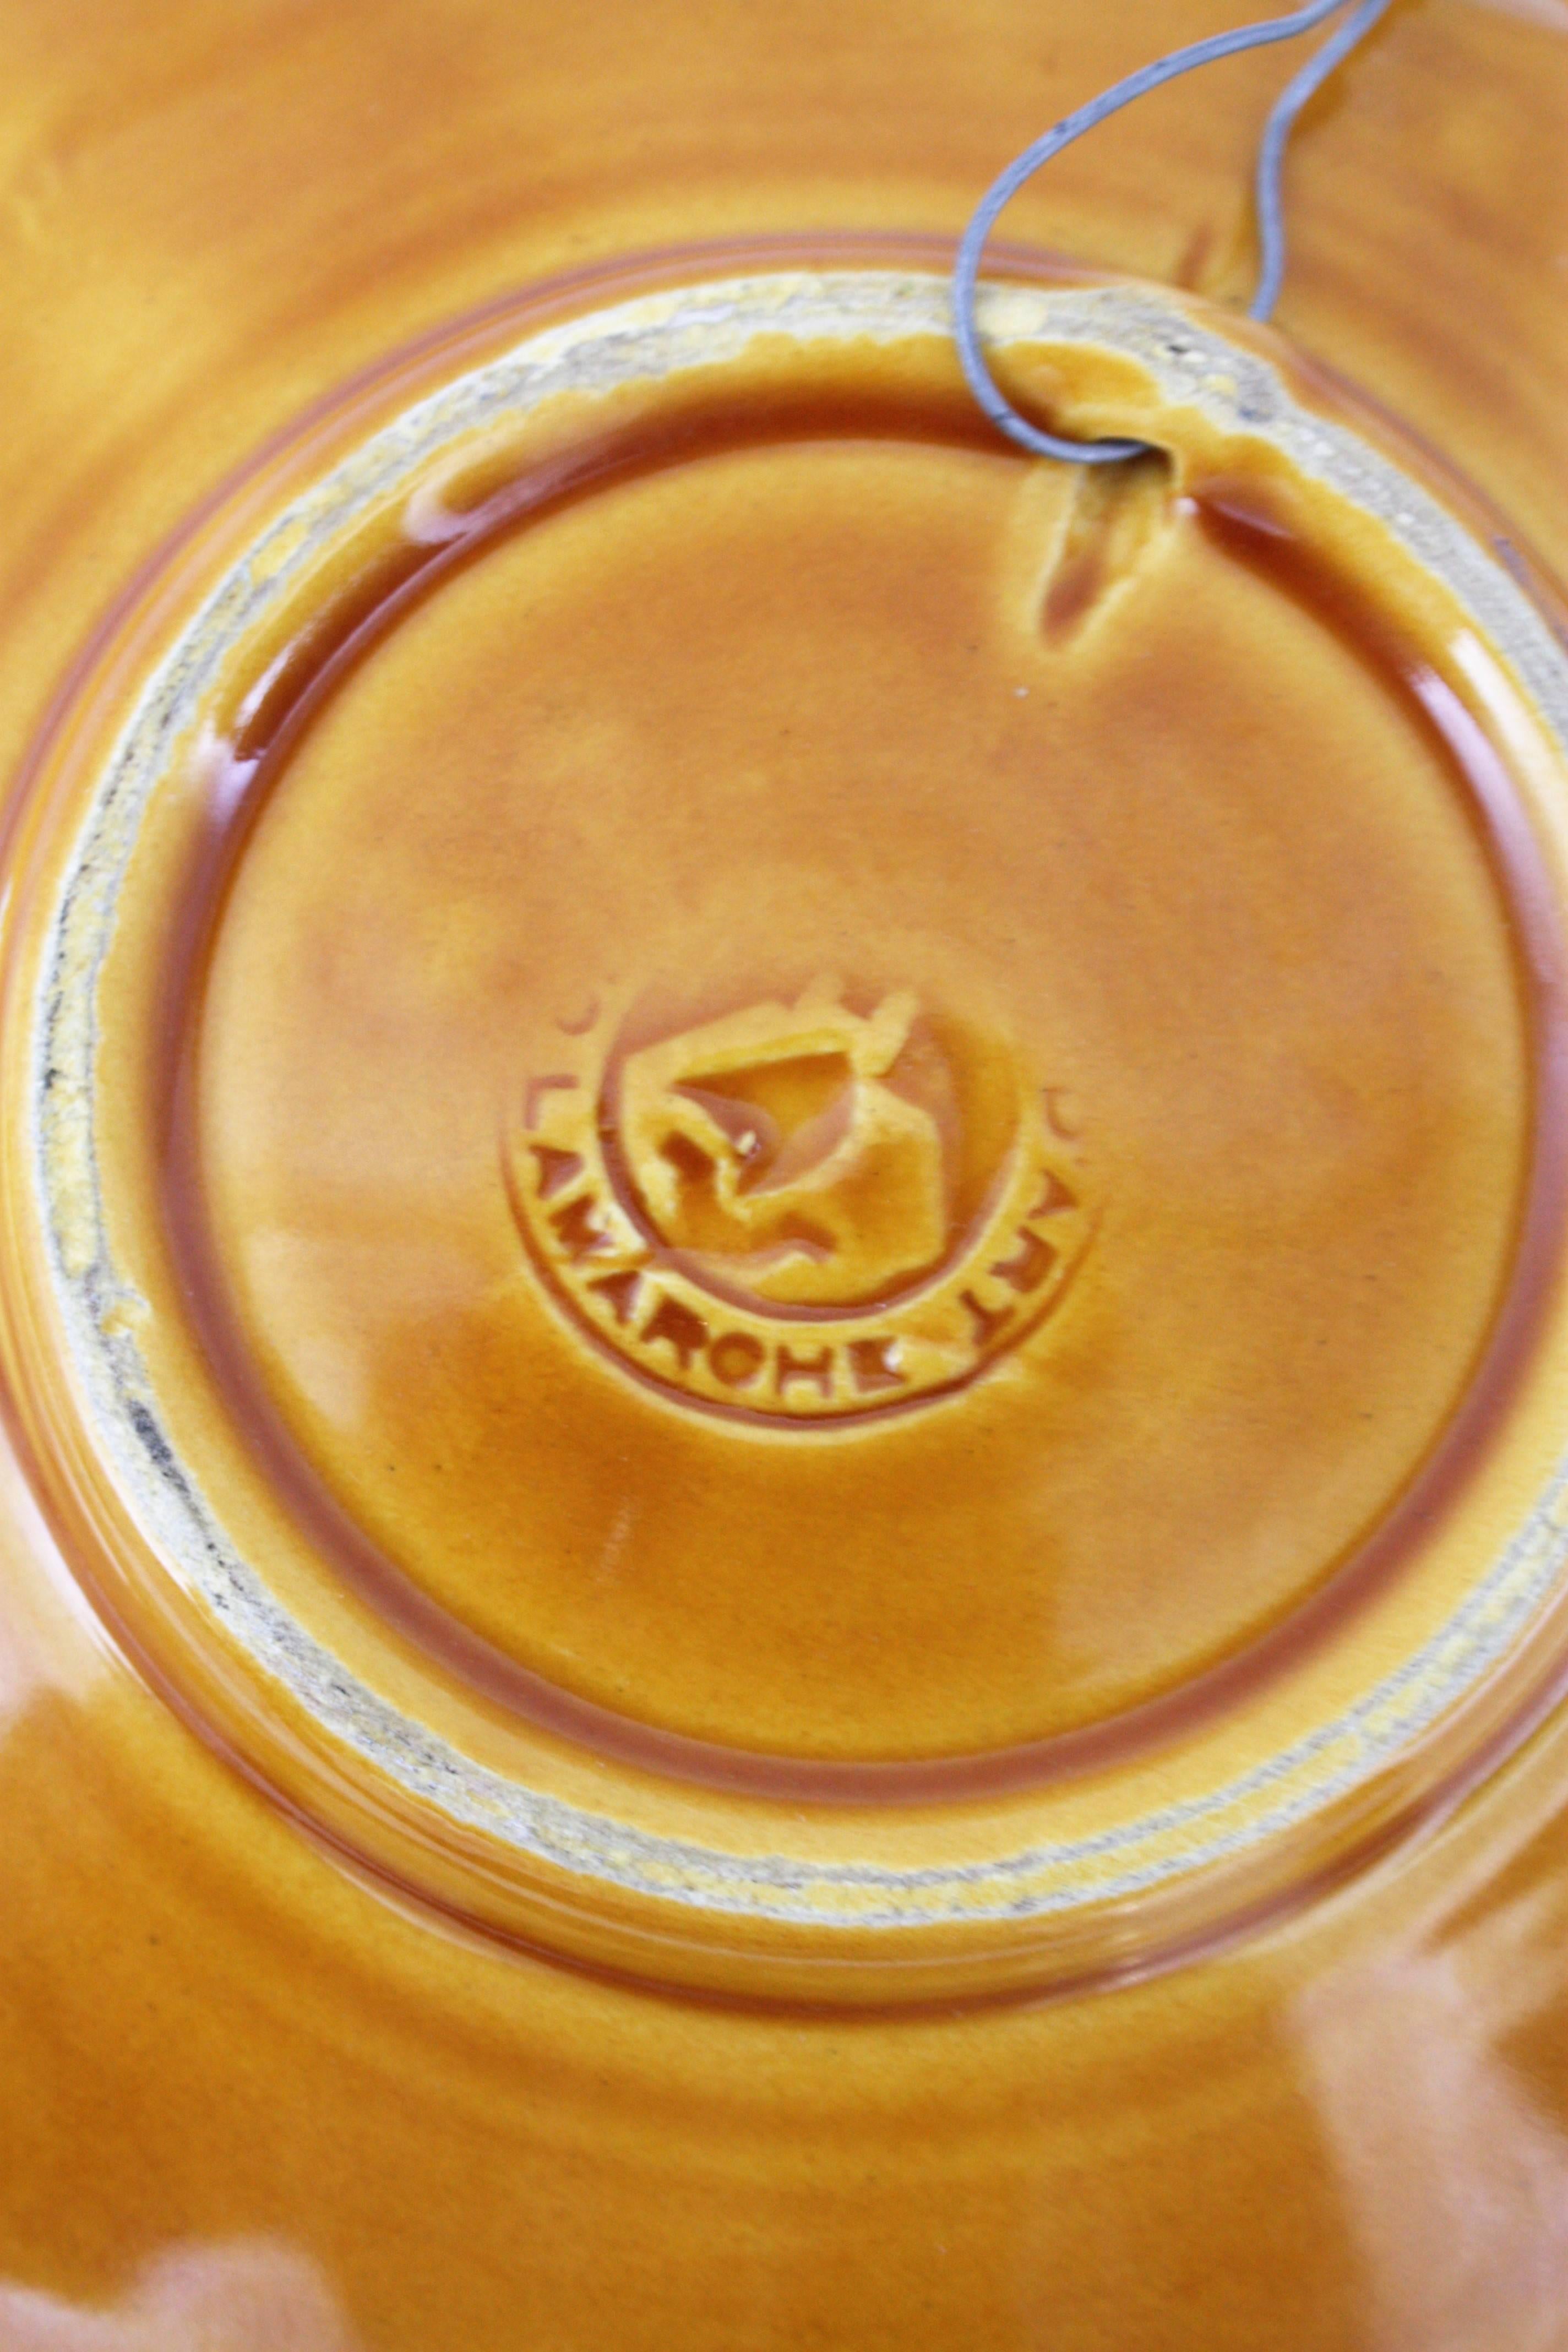 Glazed Majolica Ceramic Plate by Lamarche Monaco, Trompe L'oeil Seafood Design For Sale